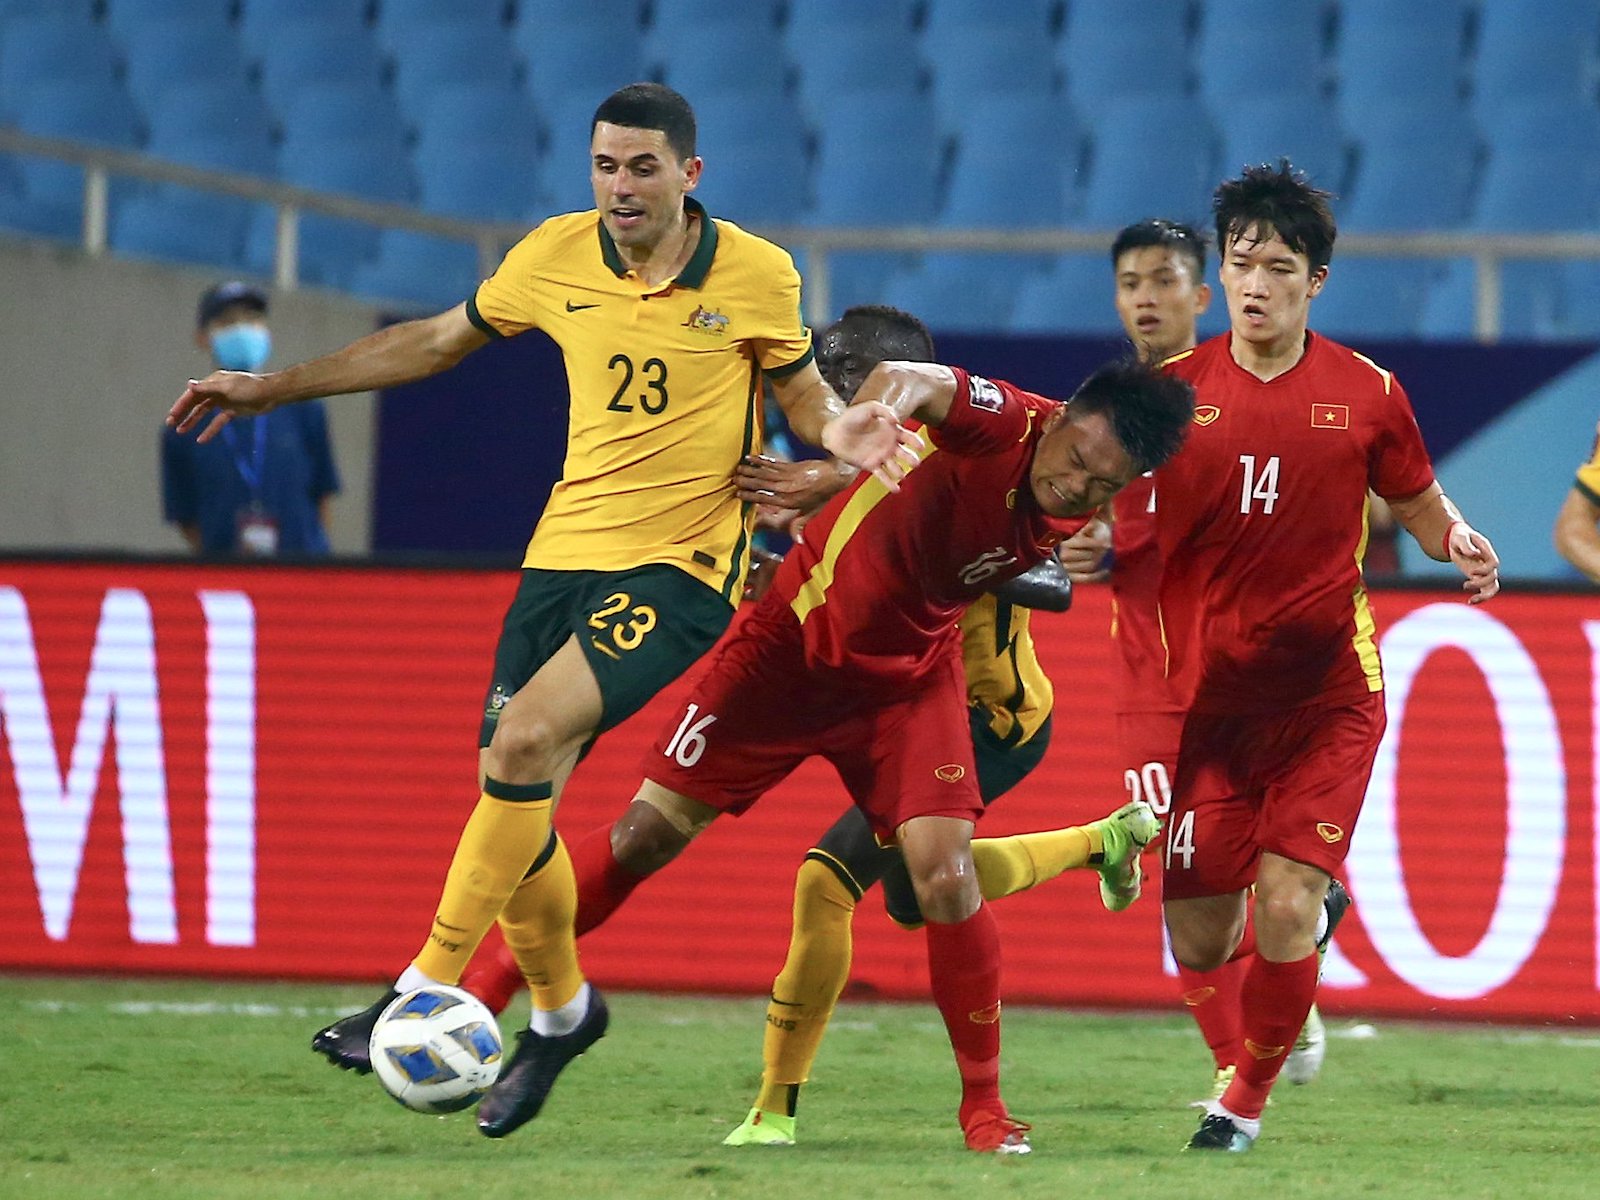 Cầu thủ Thành Chung có chơi xấu tại vòng loại World Cup 2022 không?